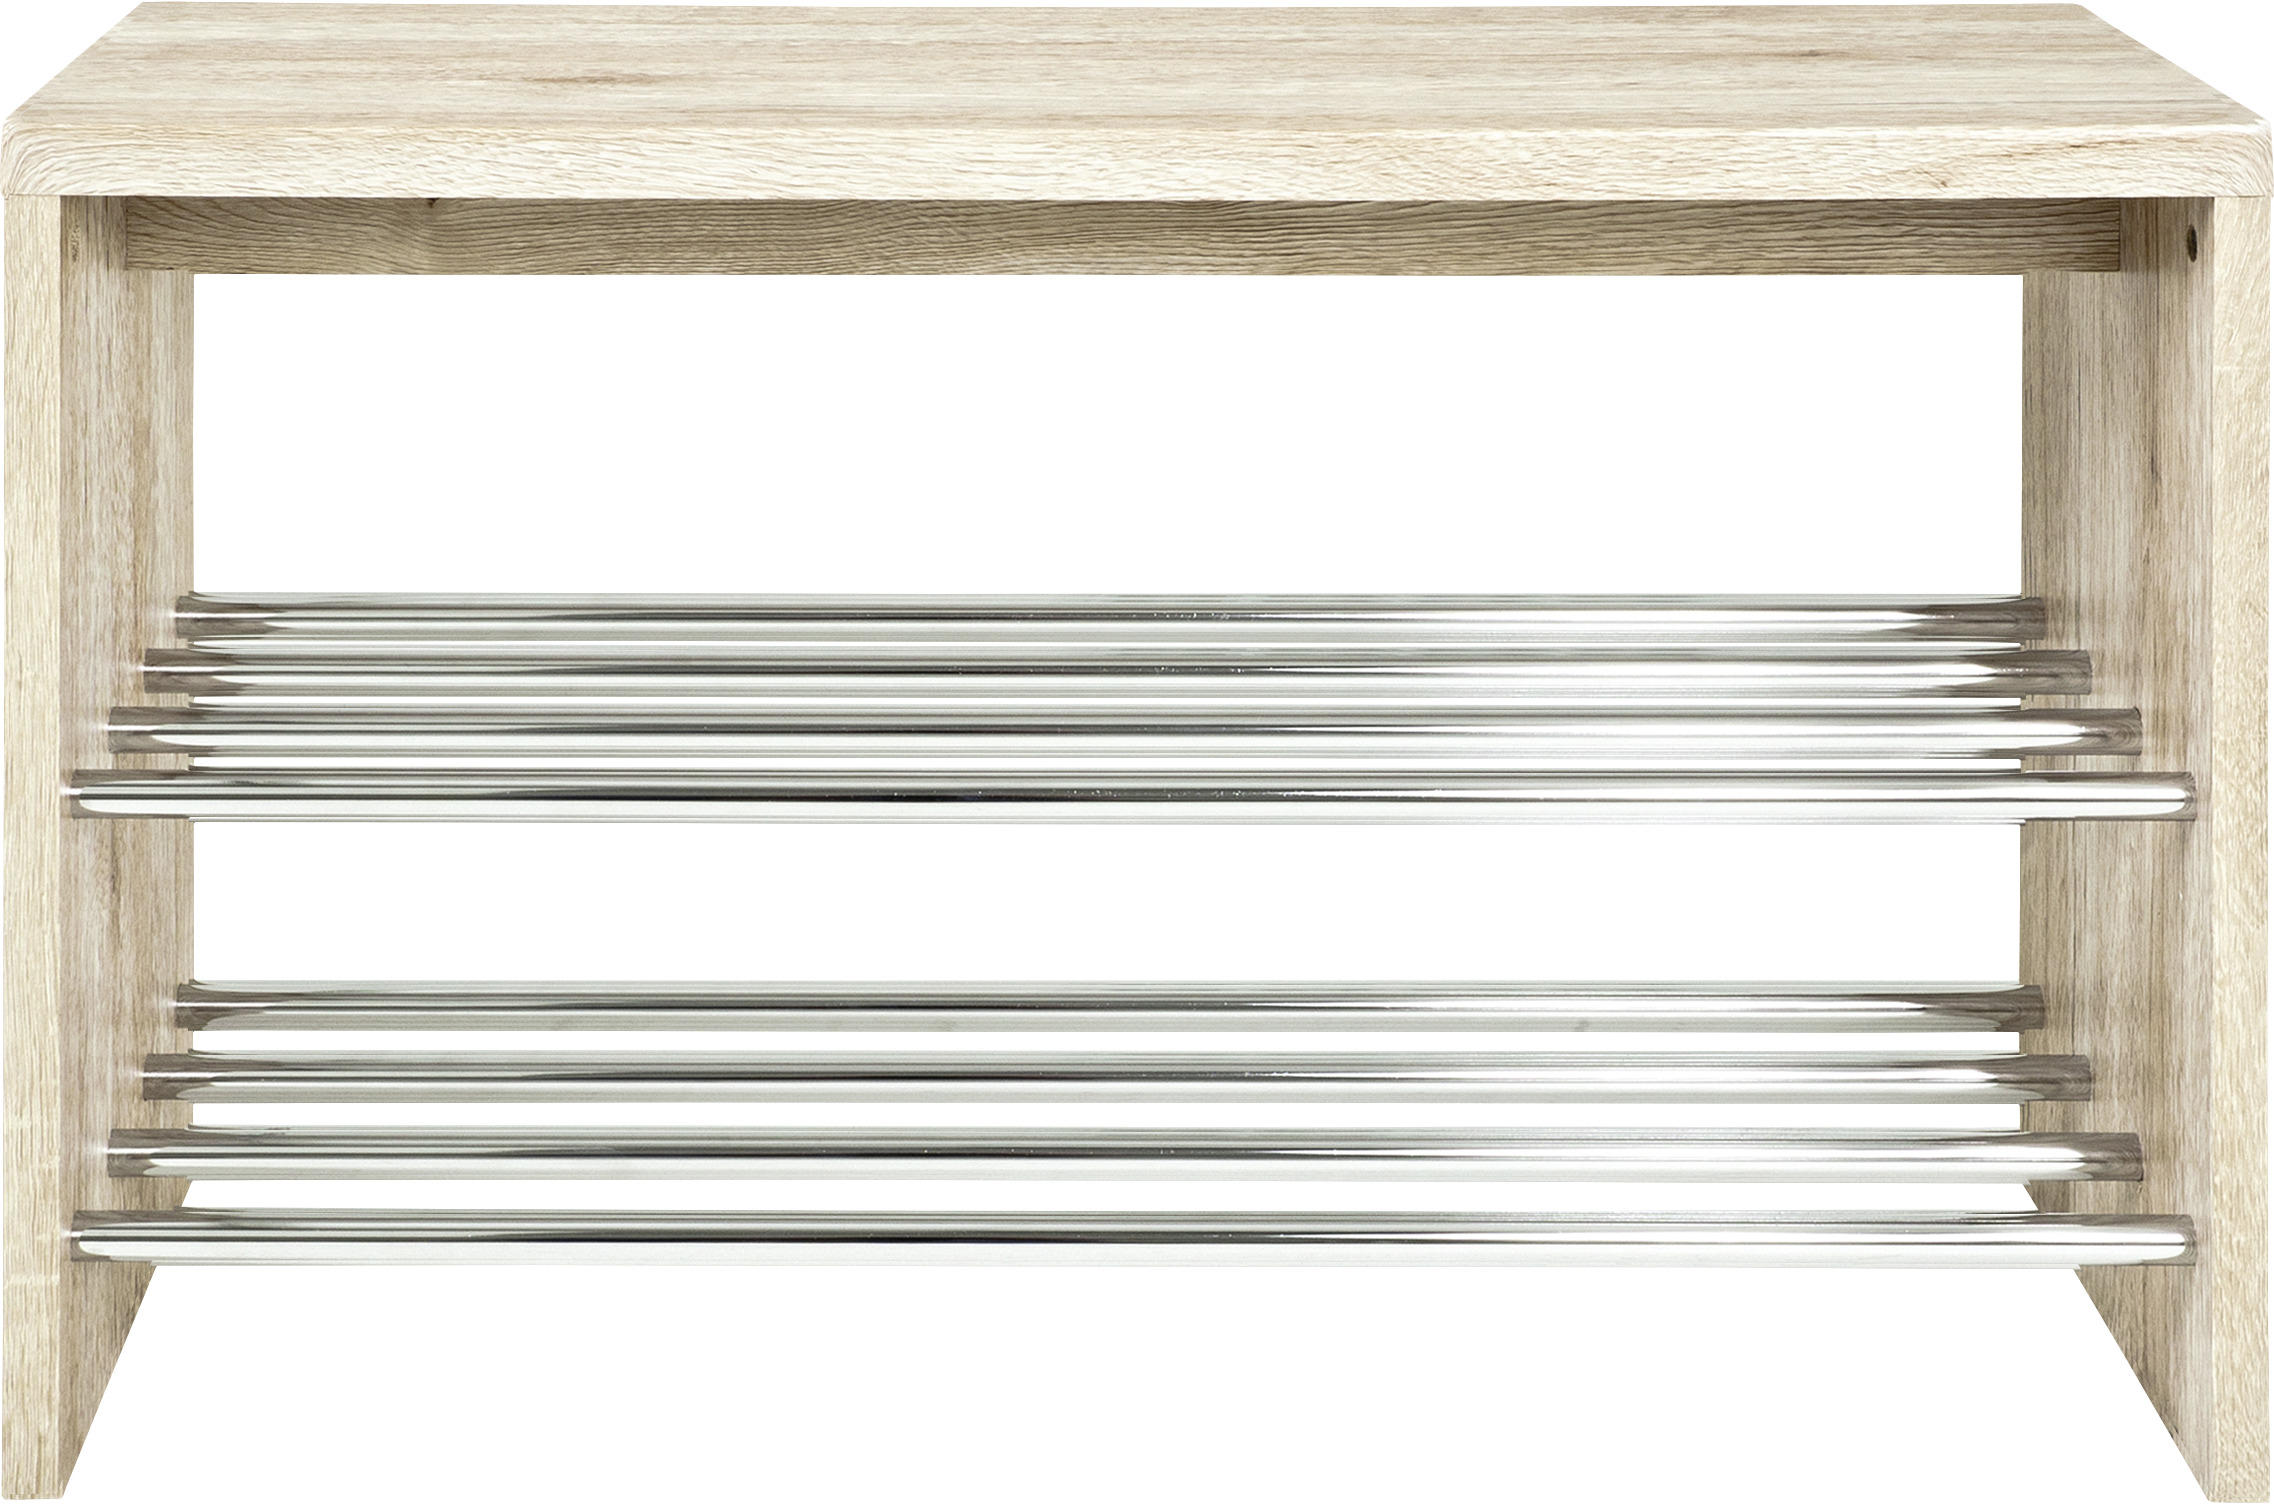 SCHUHBANK Eichefarben  - Eichefarben, Design, Holzwerkstoff/Metall (81/55/30cm) - Carryhome